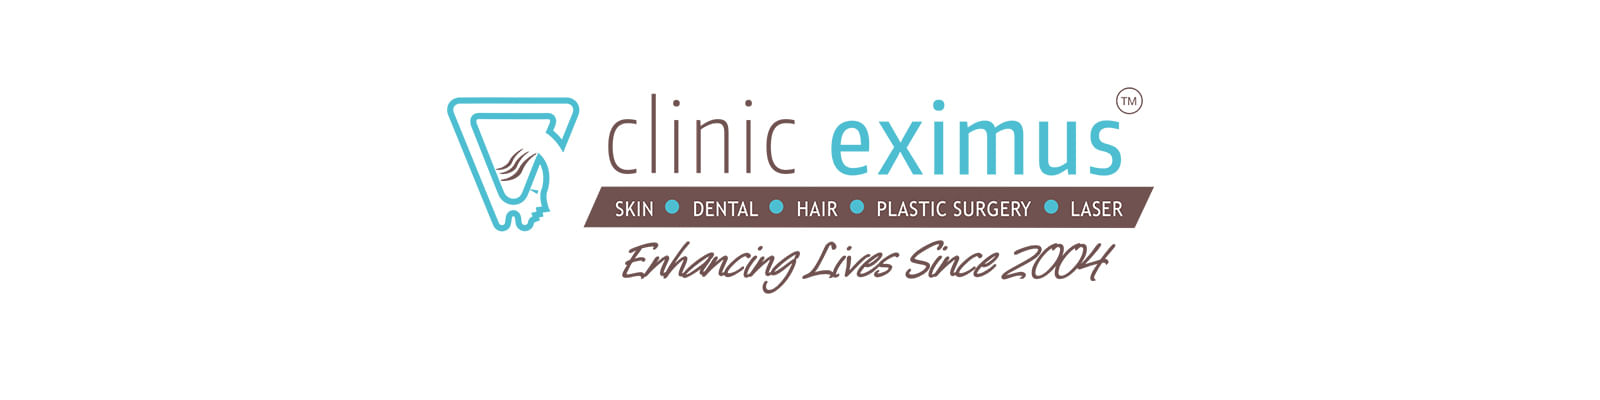 Clinic Eximus